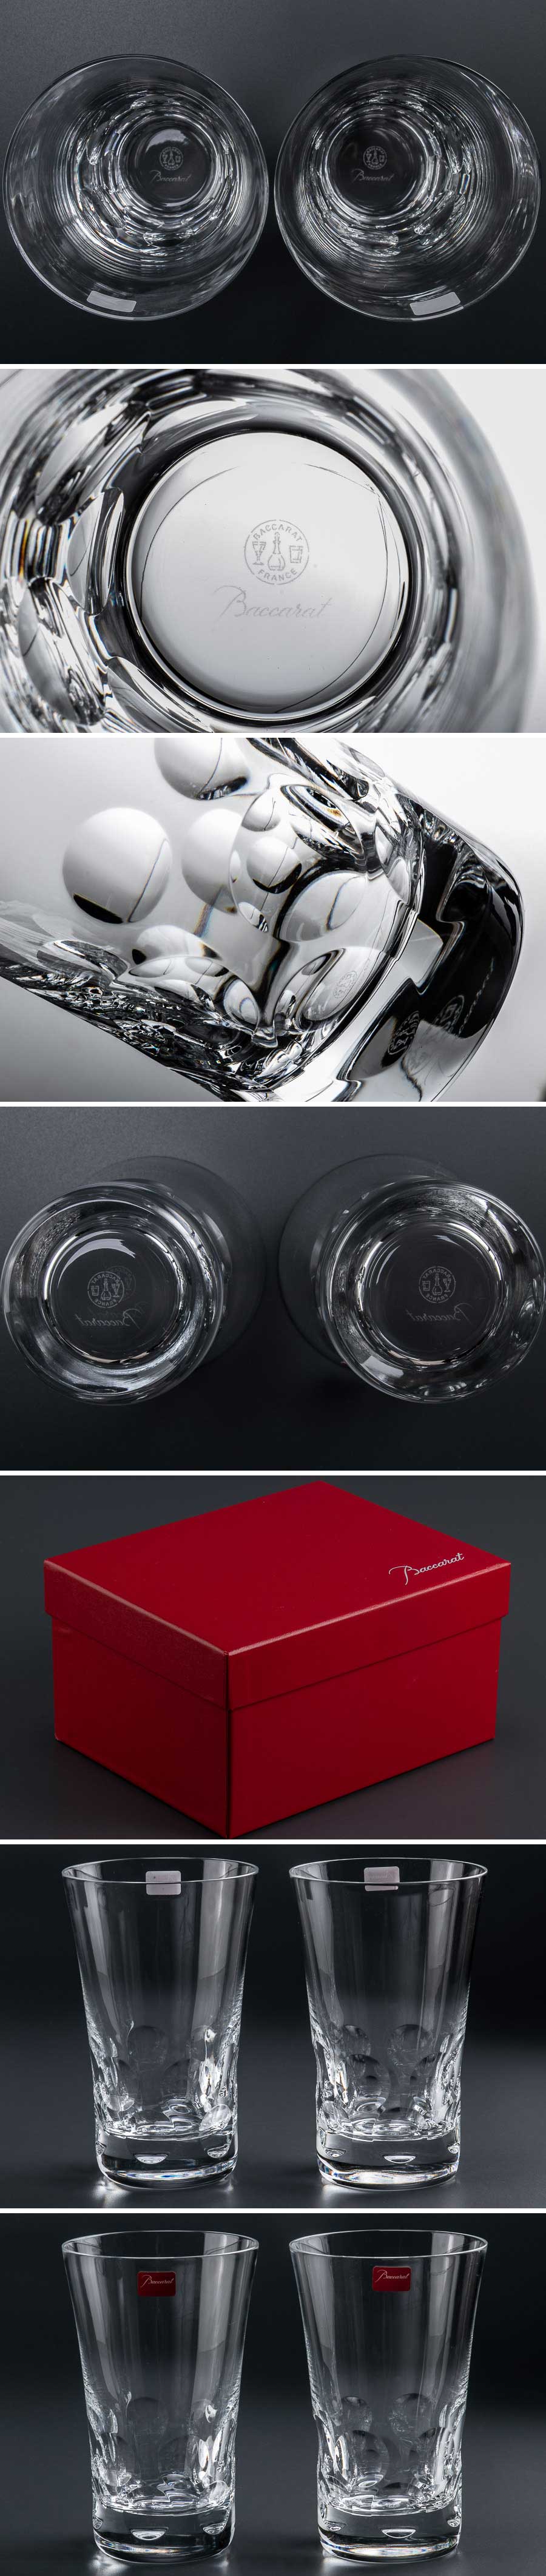 【売れ】『 Baccarat バカラ ベルーガ ハイボールグラス 2客 箱付 7805 』 2個組 洋食器 ブランド テーブルウェア クリスタルガラス 工芸ガラス